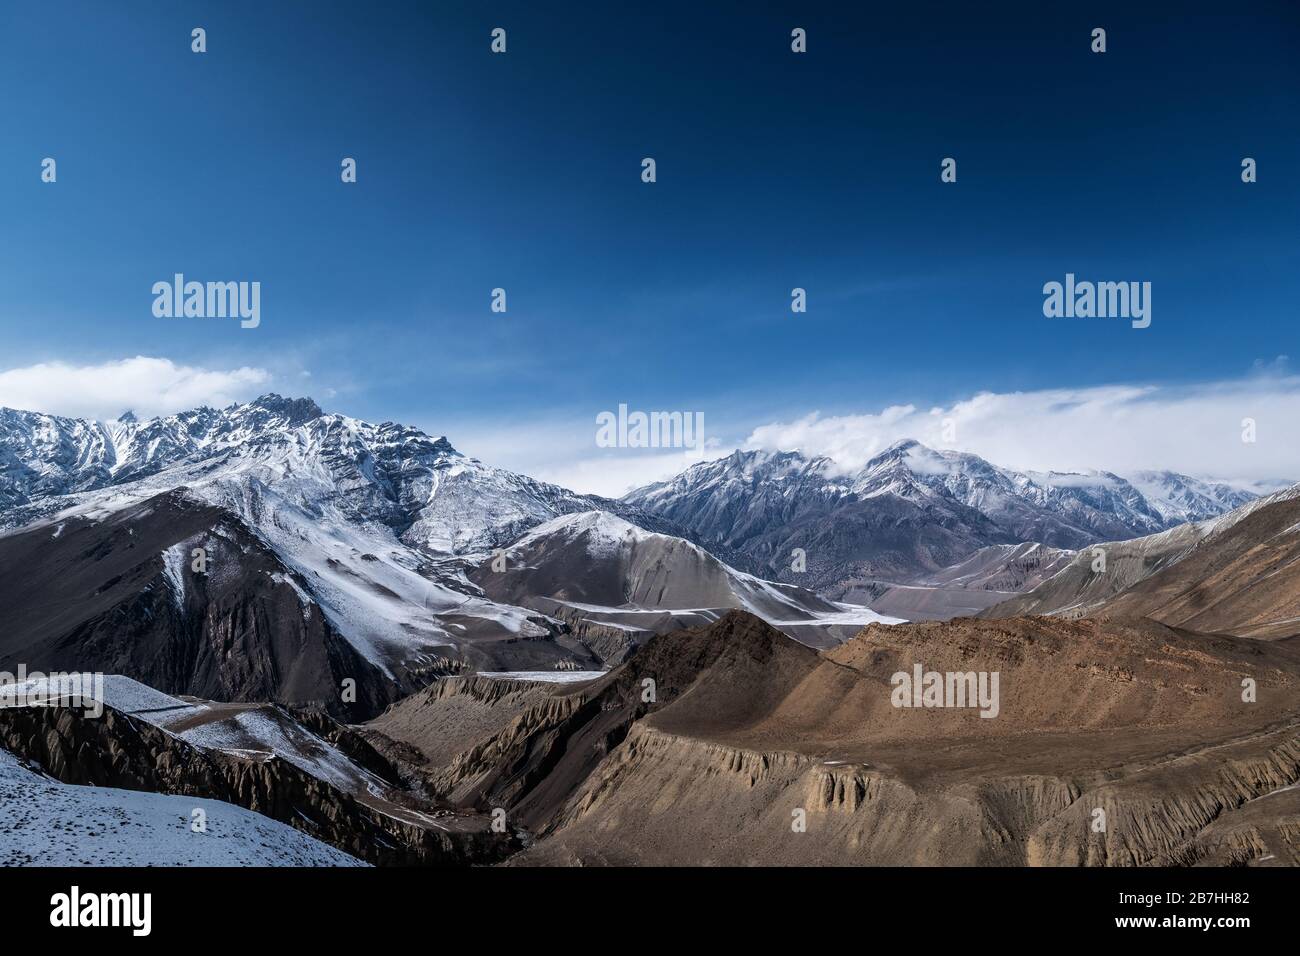 Mustang paysages dans la neige, Népal Banque D'Images